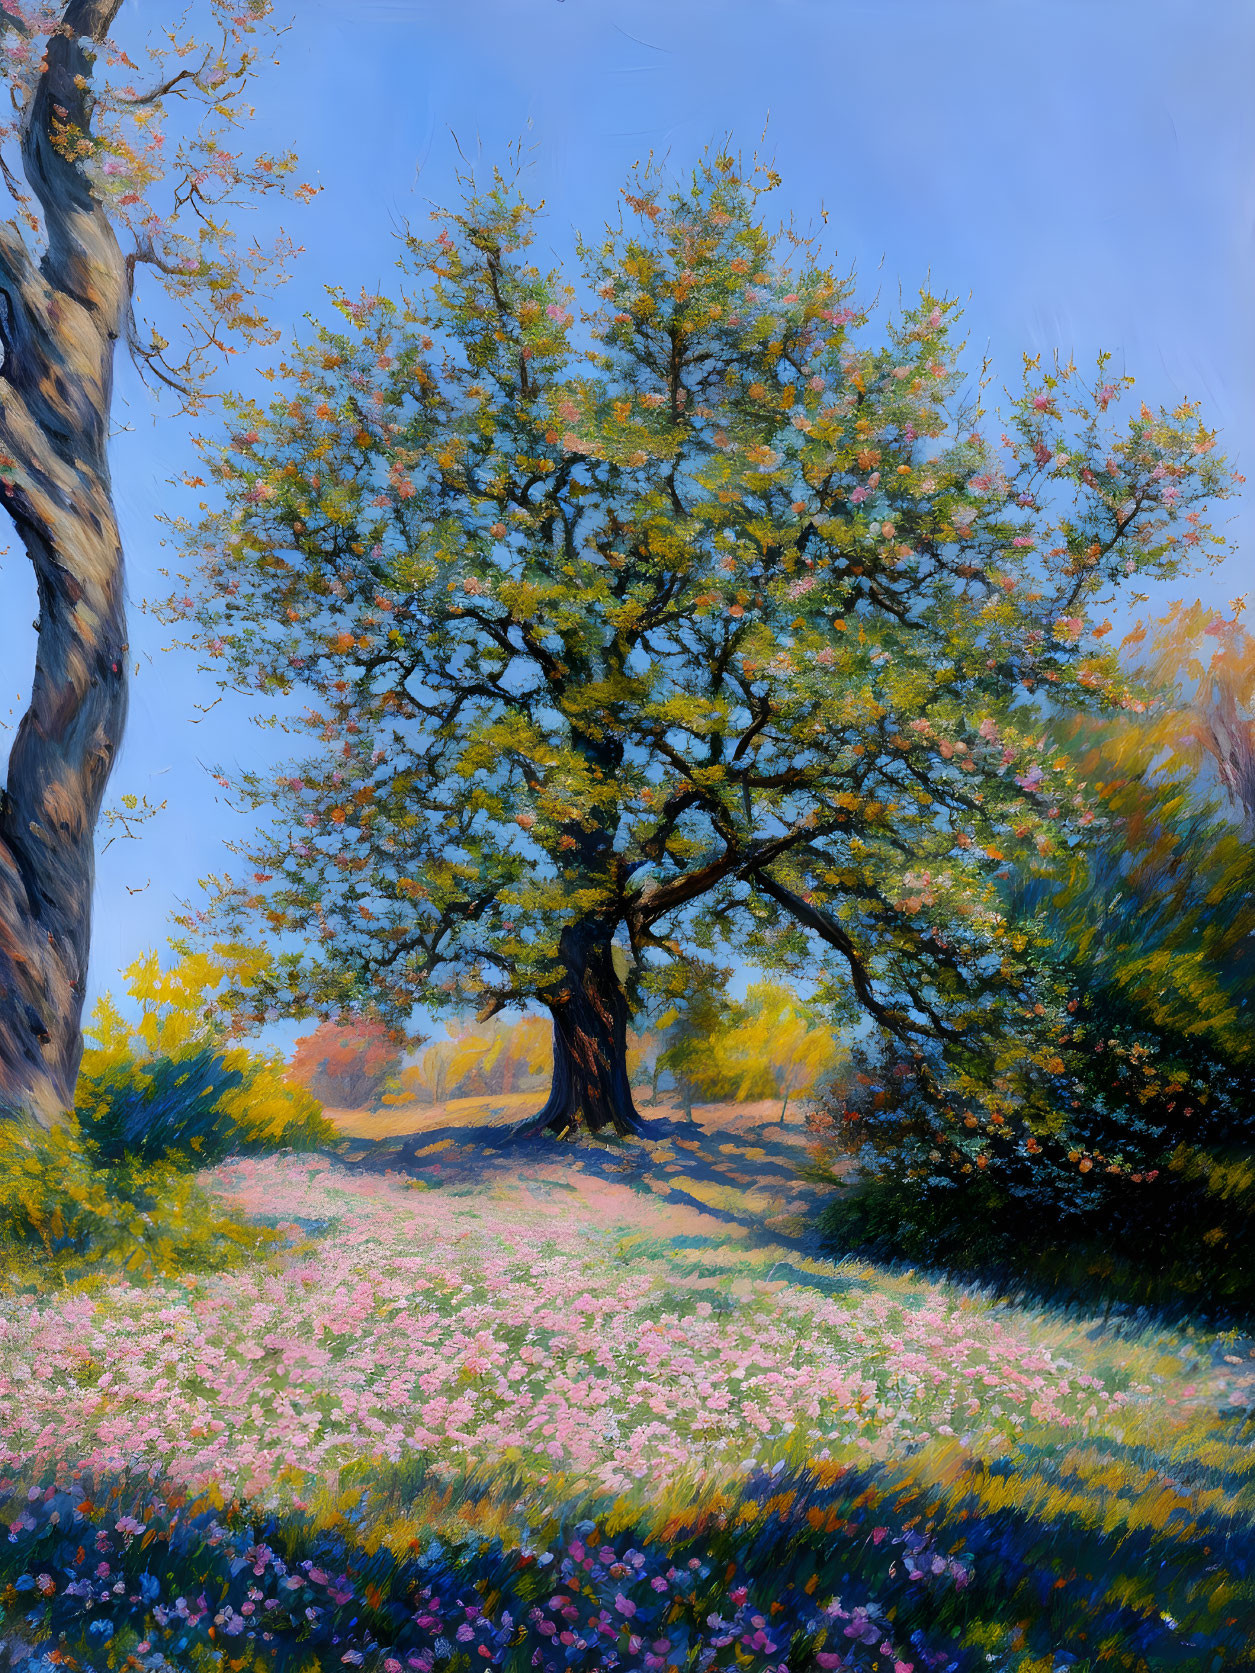 An old oak tree in a spring season iii